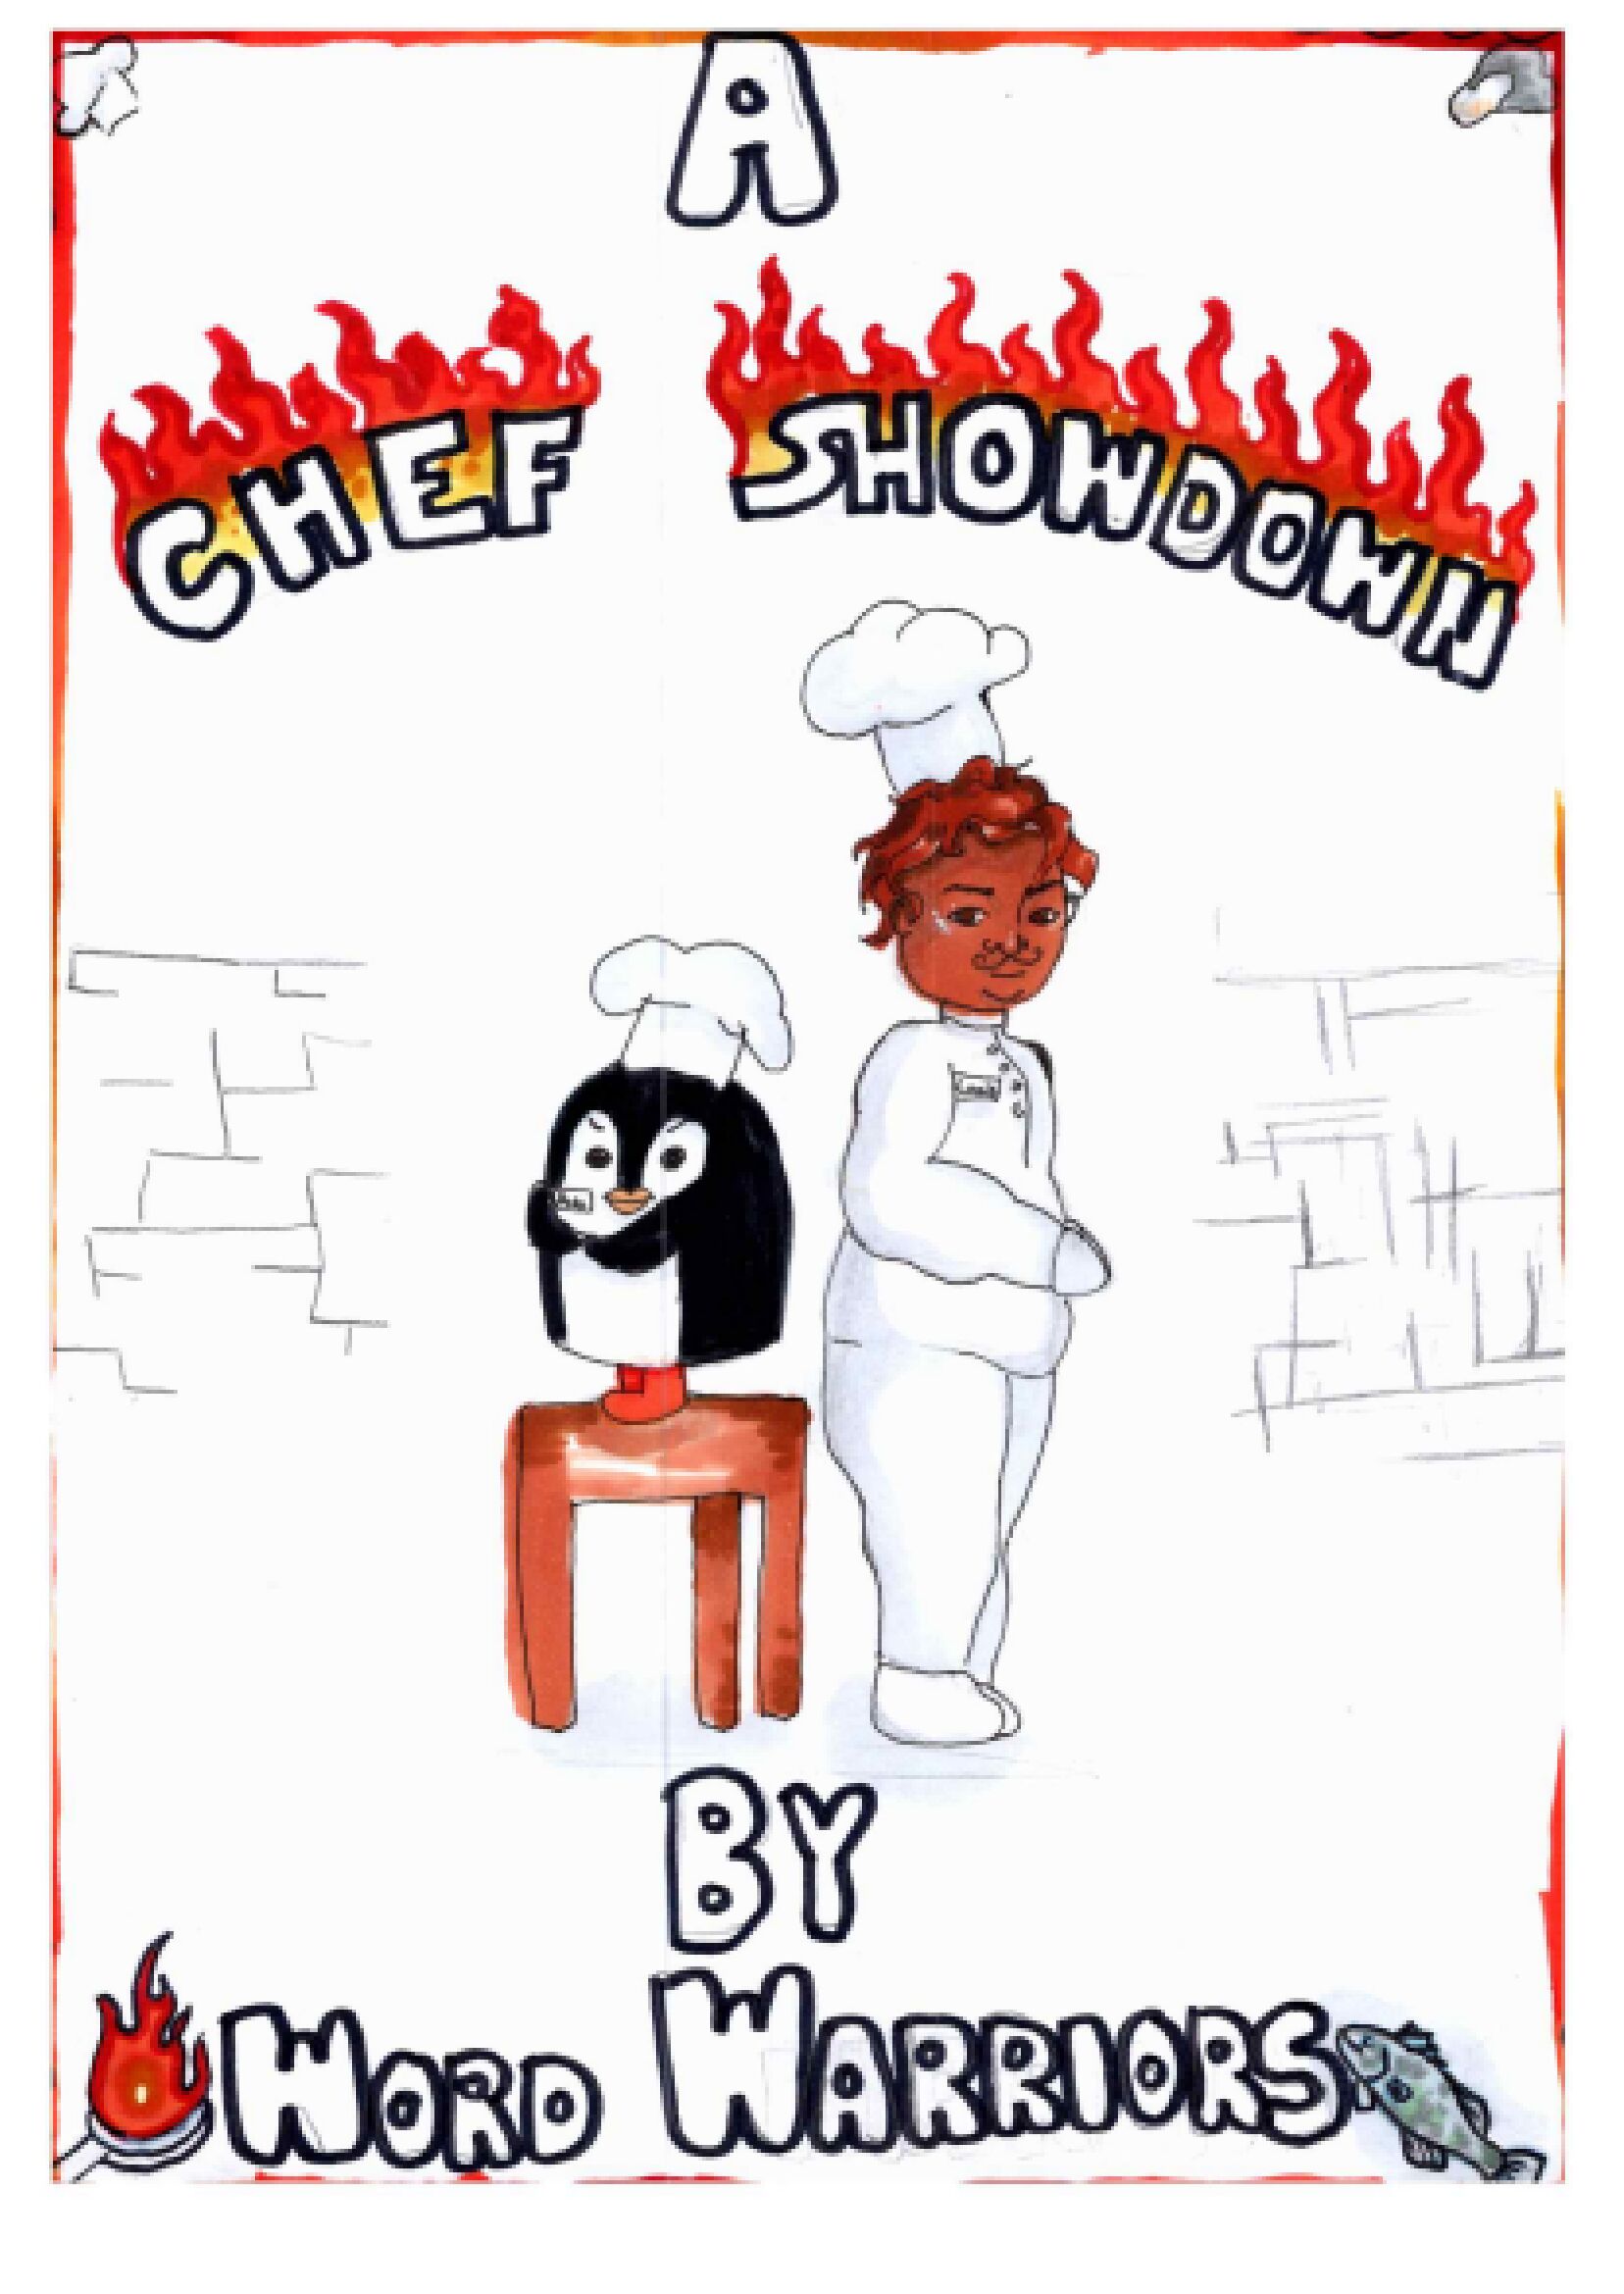 A Chef Showdown